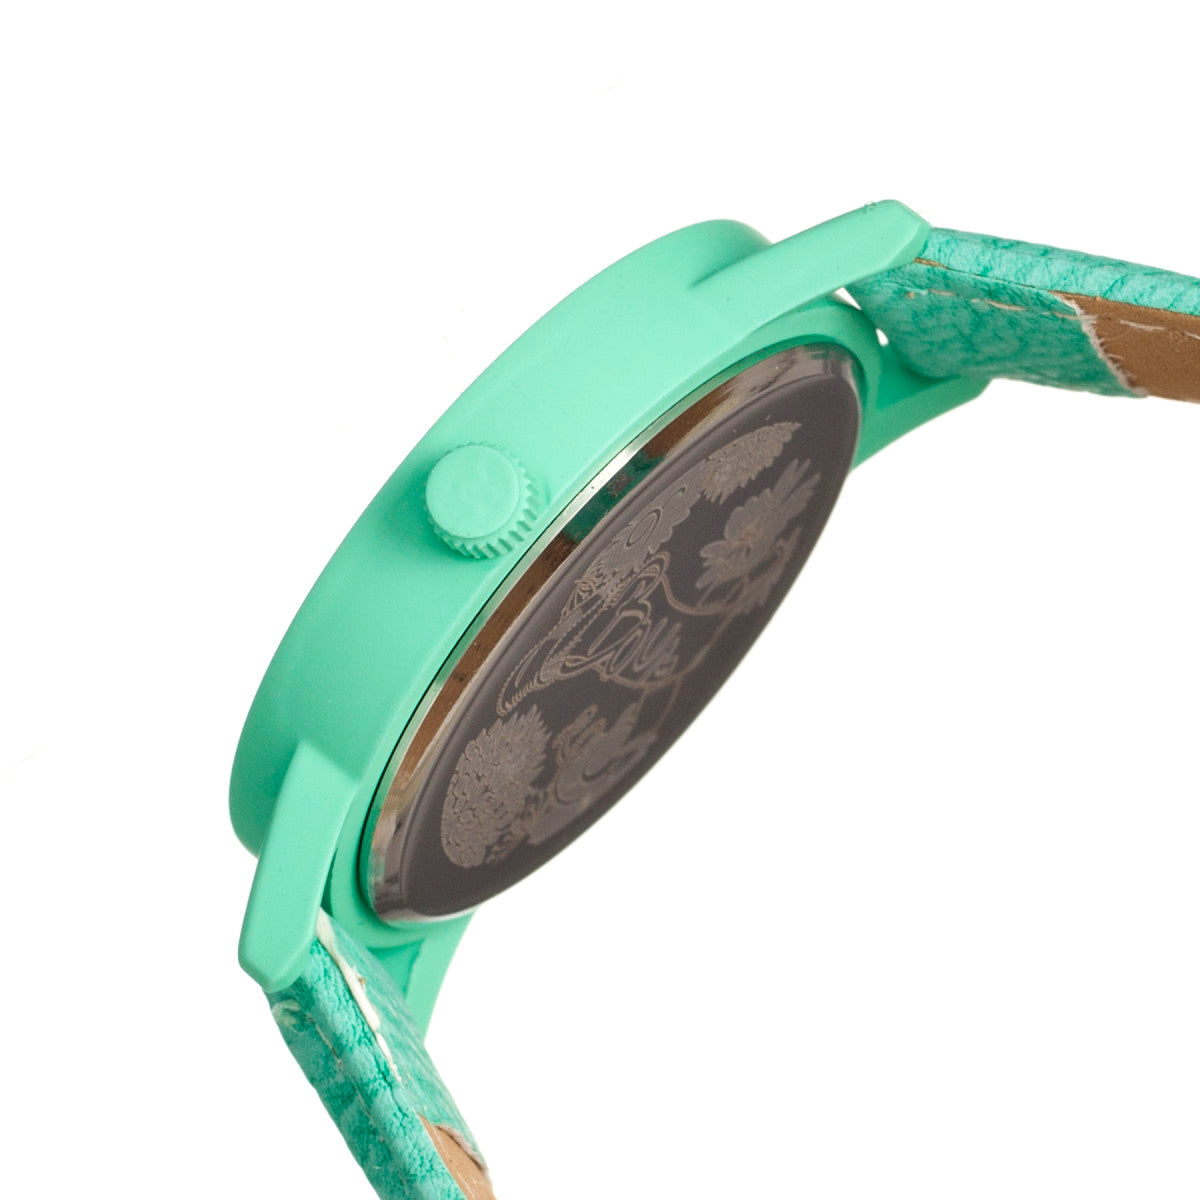 Boum Gateau Leather-Band Ladies Watch - Turquoise - BOUBM1101